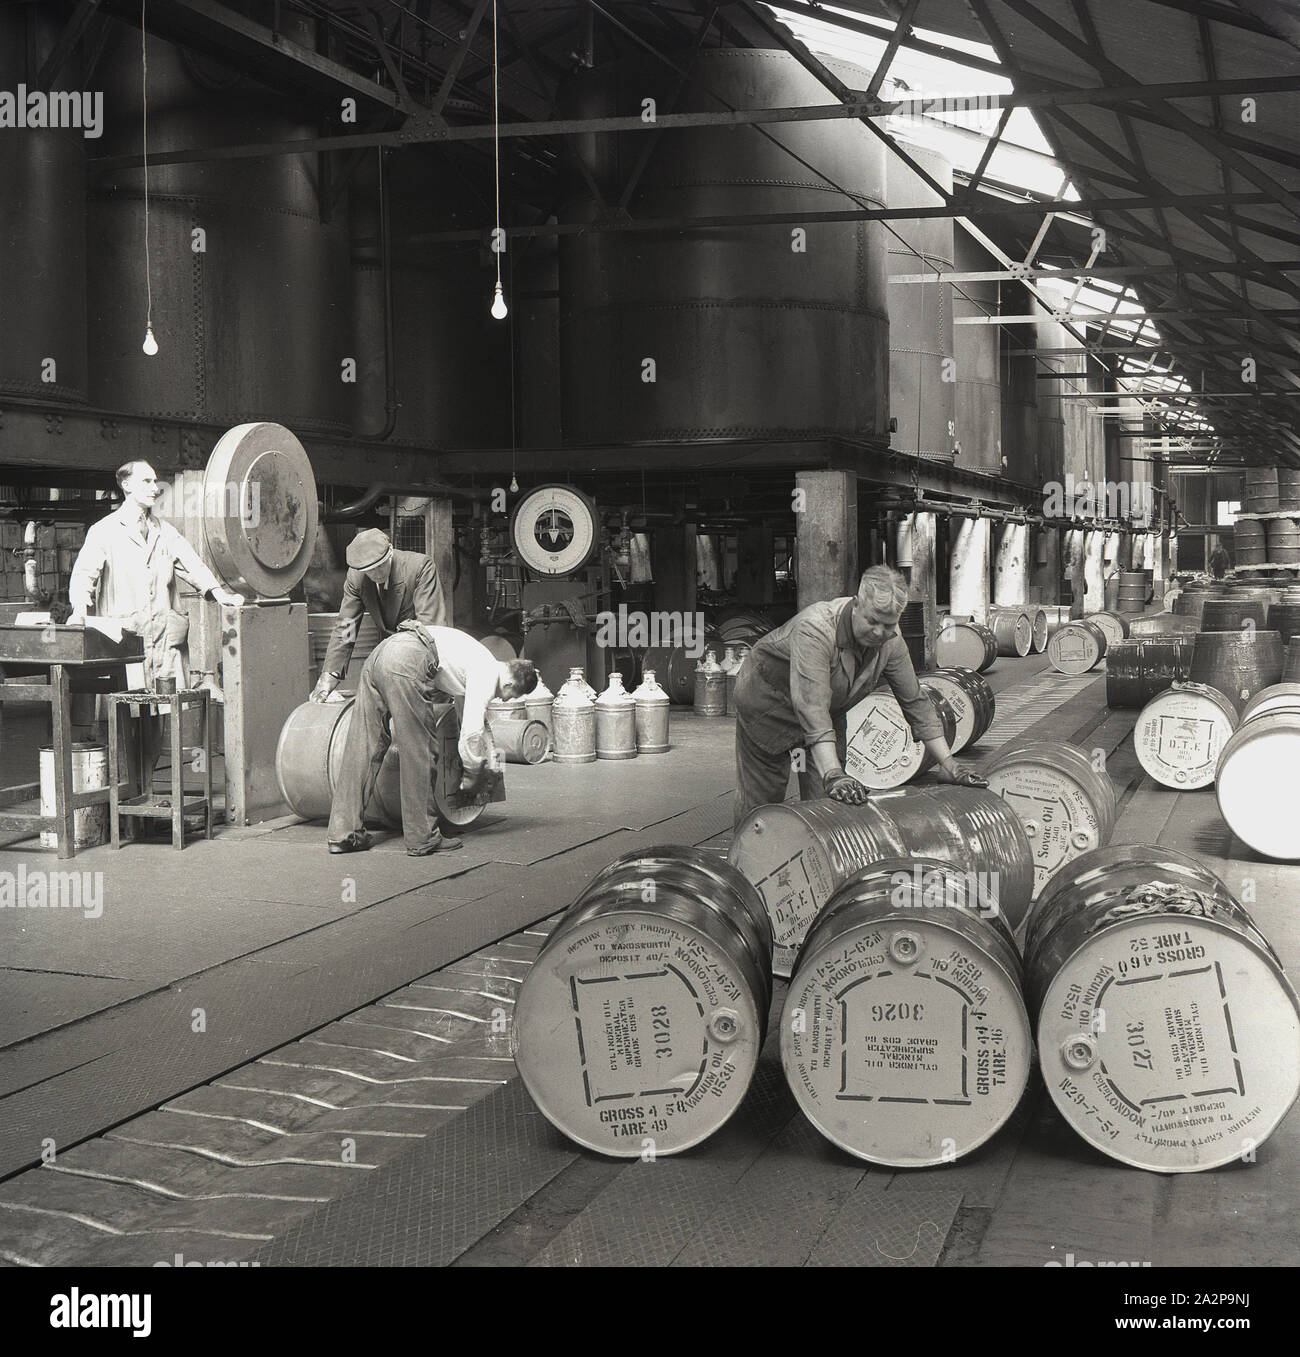 Années 1950, historiques, travailleurs masculins à l'intérieur d'un entrepôt remplissant des fûts d'huile moteur, Angleterre, Royaume-Uni. Des cycleurs géants reposent sur des poteaux en béton dans une partie du bâtiment. Banque D'Images